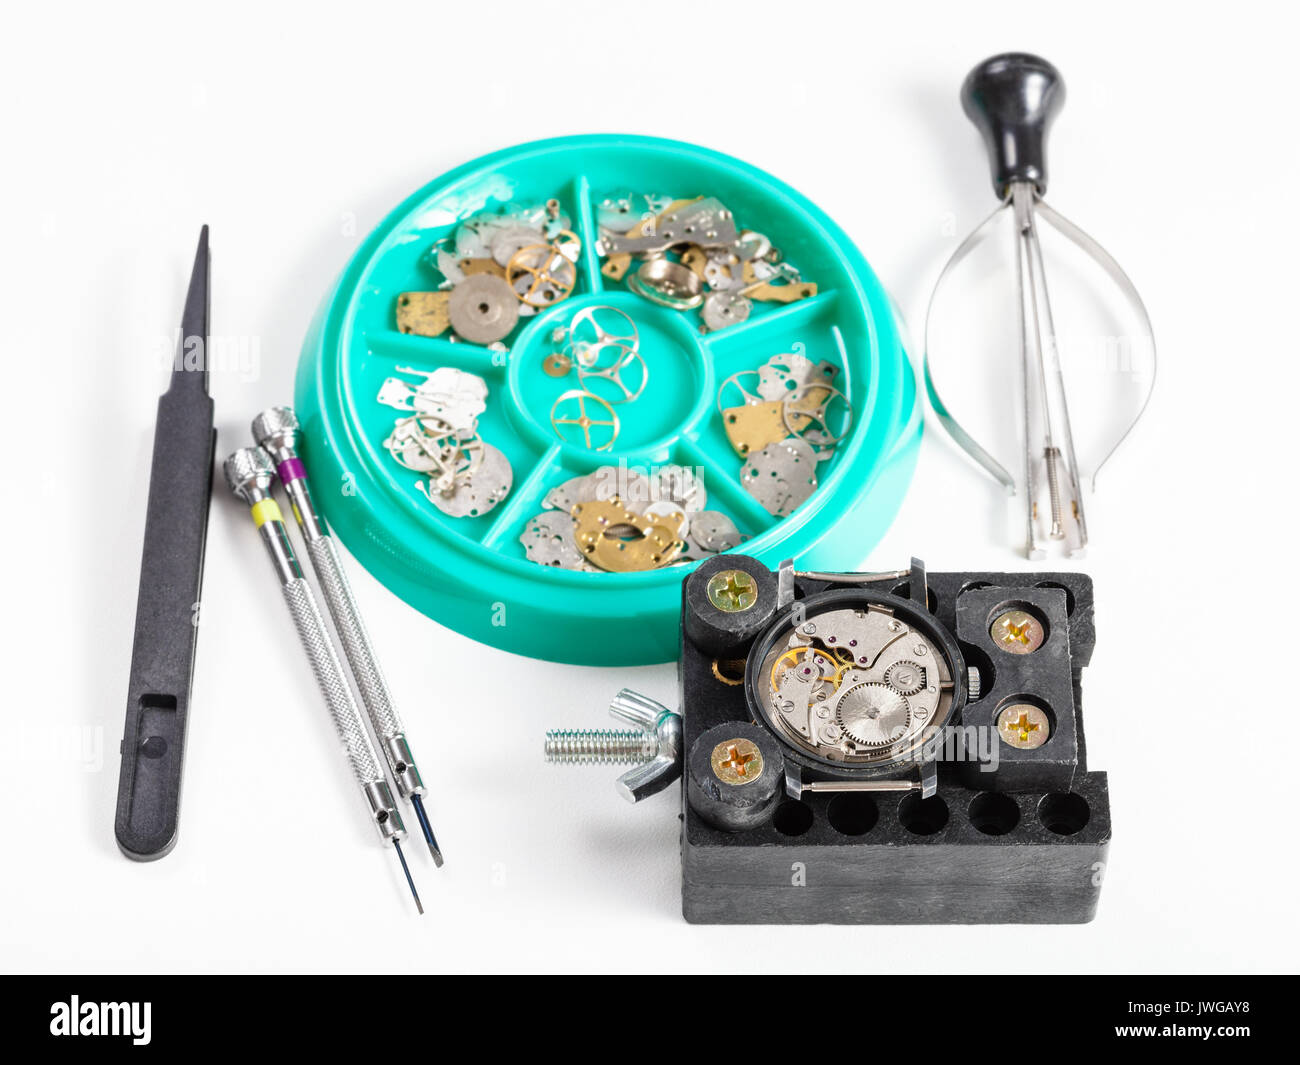 Atelier horloger - ensemble d'outils et pièces de rechange pour la réparation de montre sur fond blanc Banque D'Images